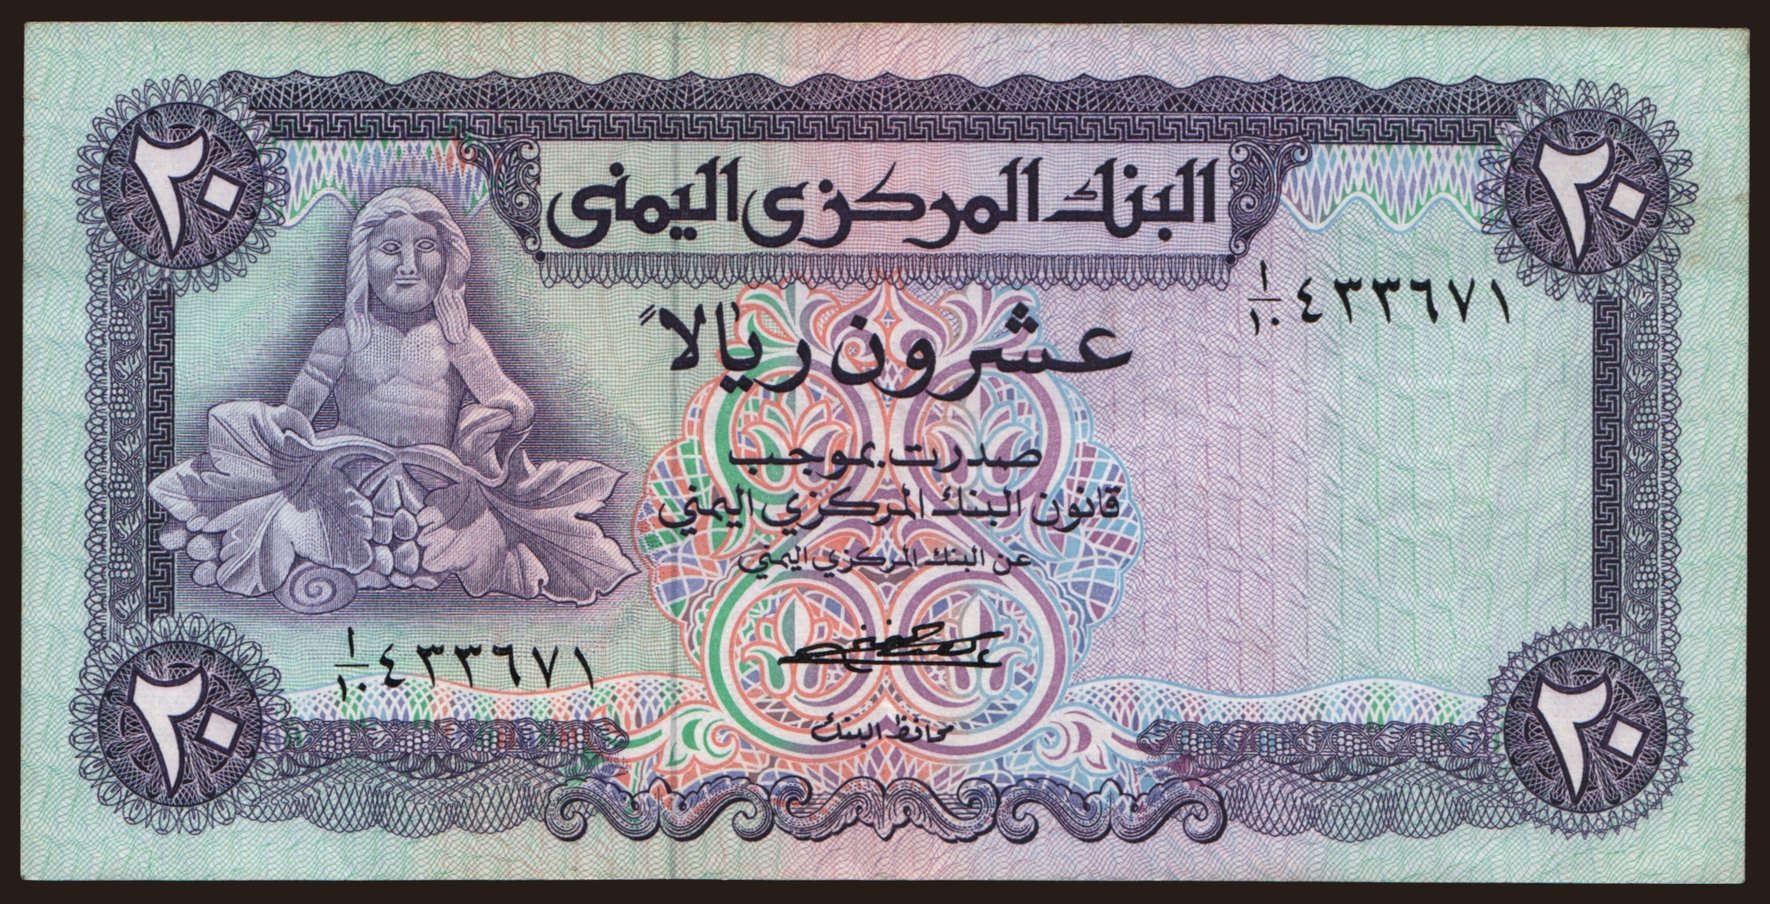 20 rials, 1973